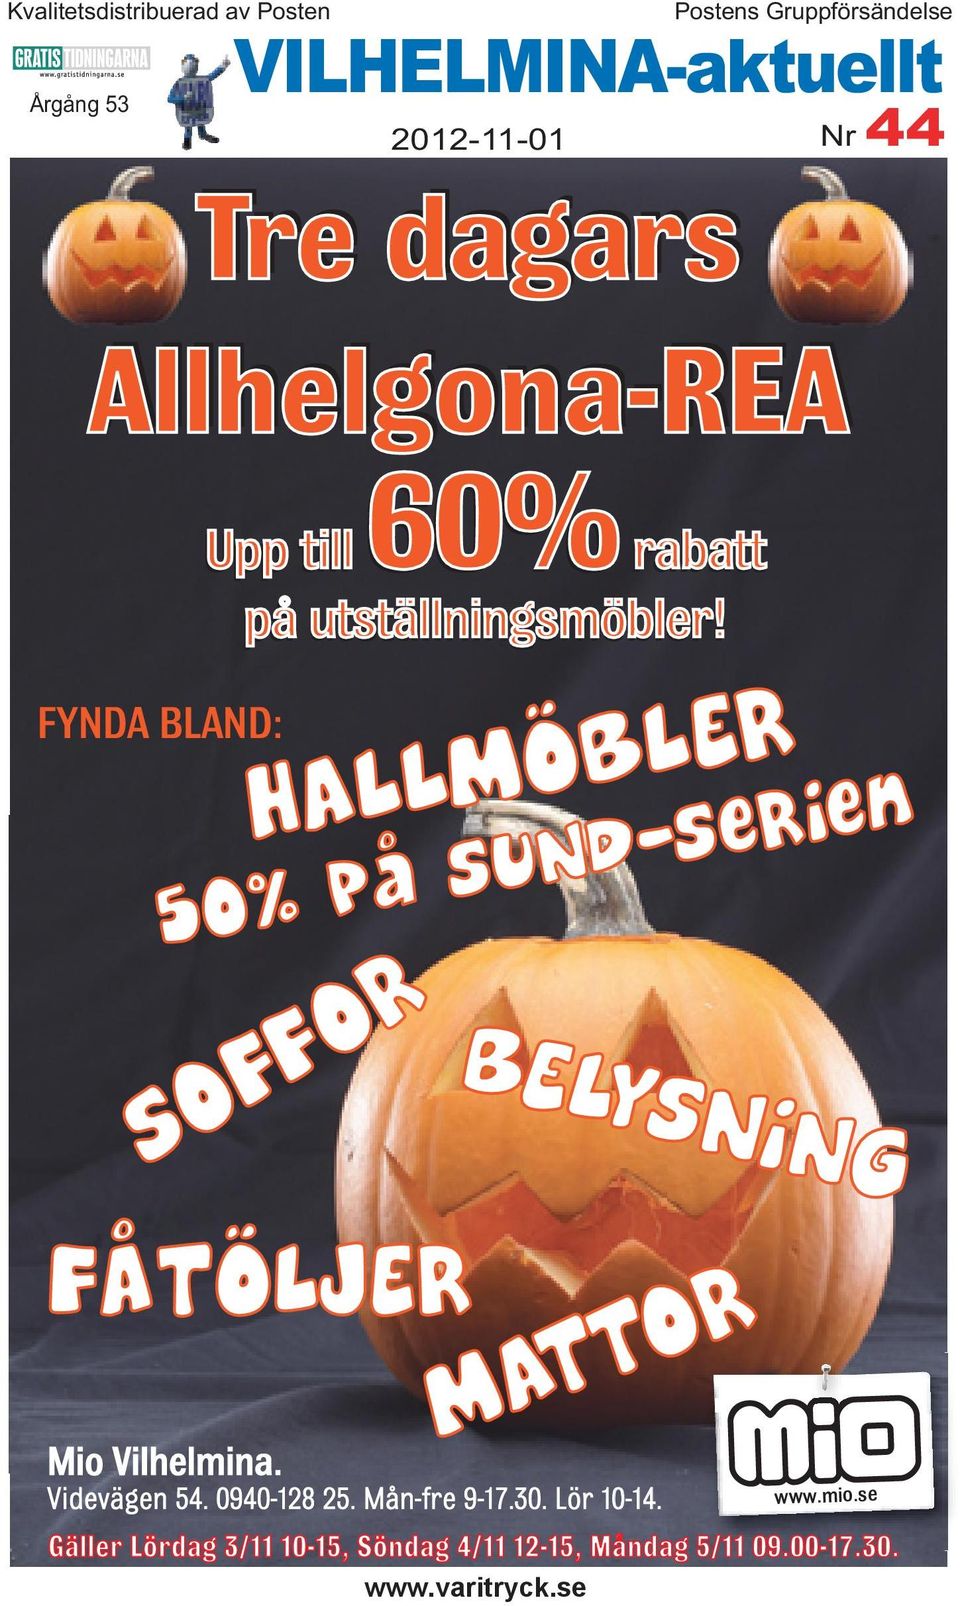 HALLMÖBLER SOFFOR Postens Gruppförsändelse VILHELMINA-aktuellt 2012-11-01 Nr 44 50% på SUND-serien